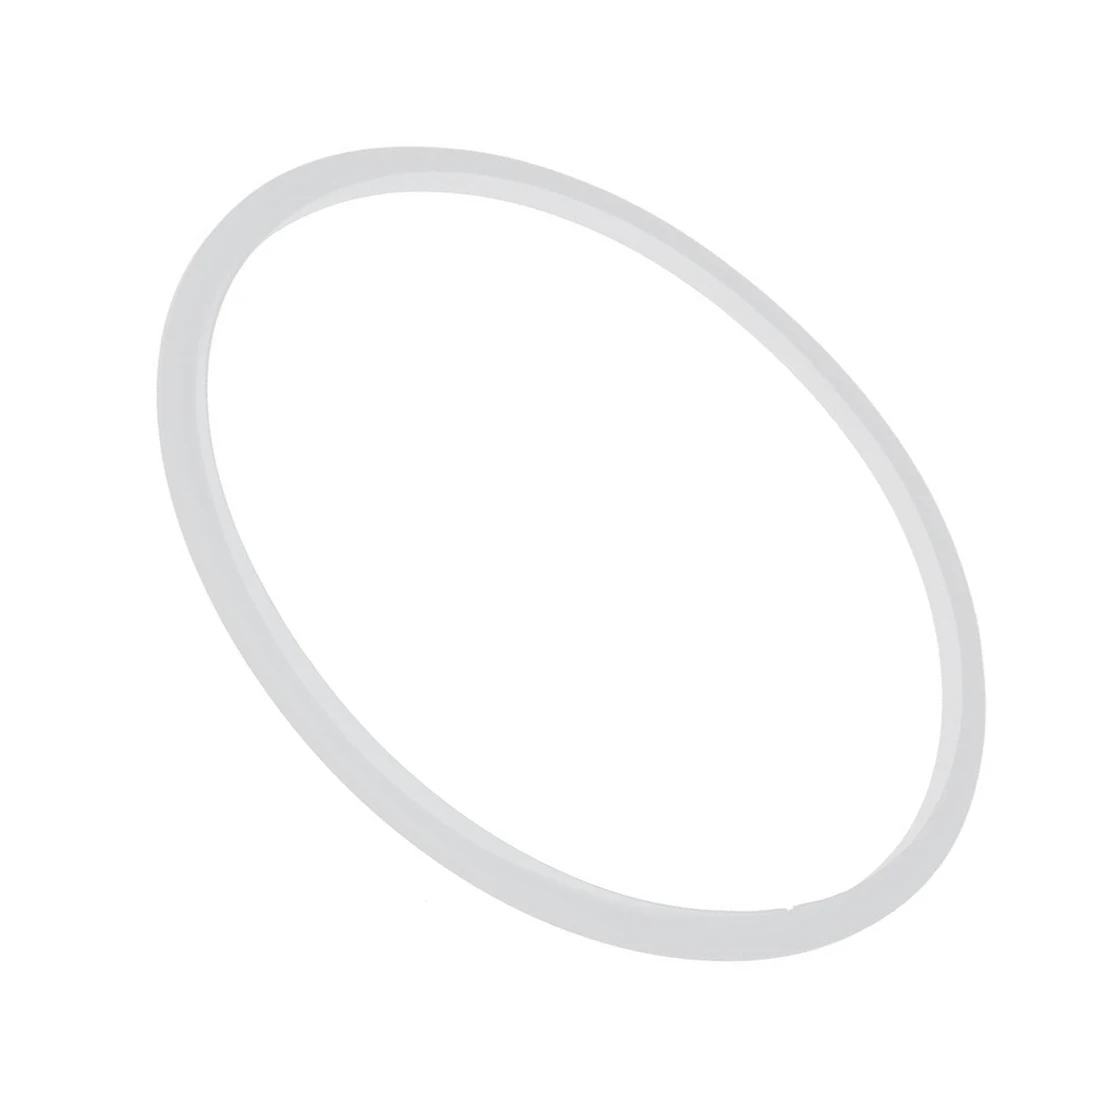 Резиновое уплотнение скороварки уплотнительное кольцо 24 см внутренний диаметр, белый